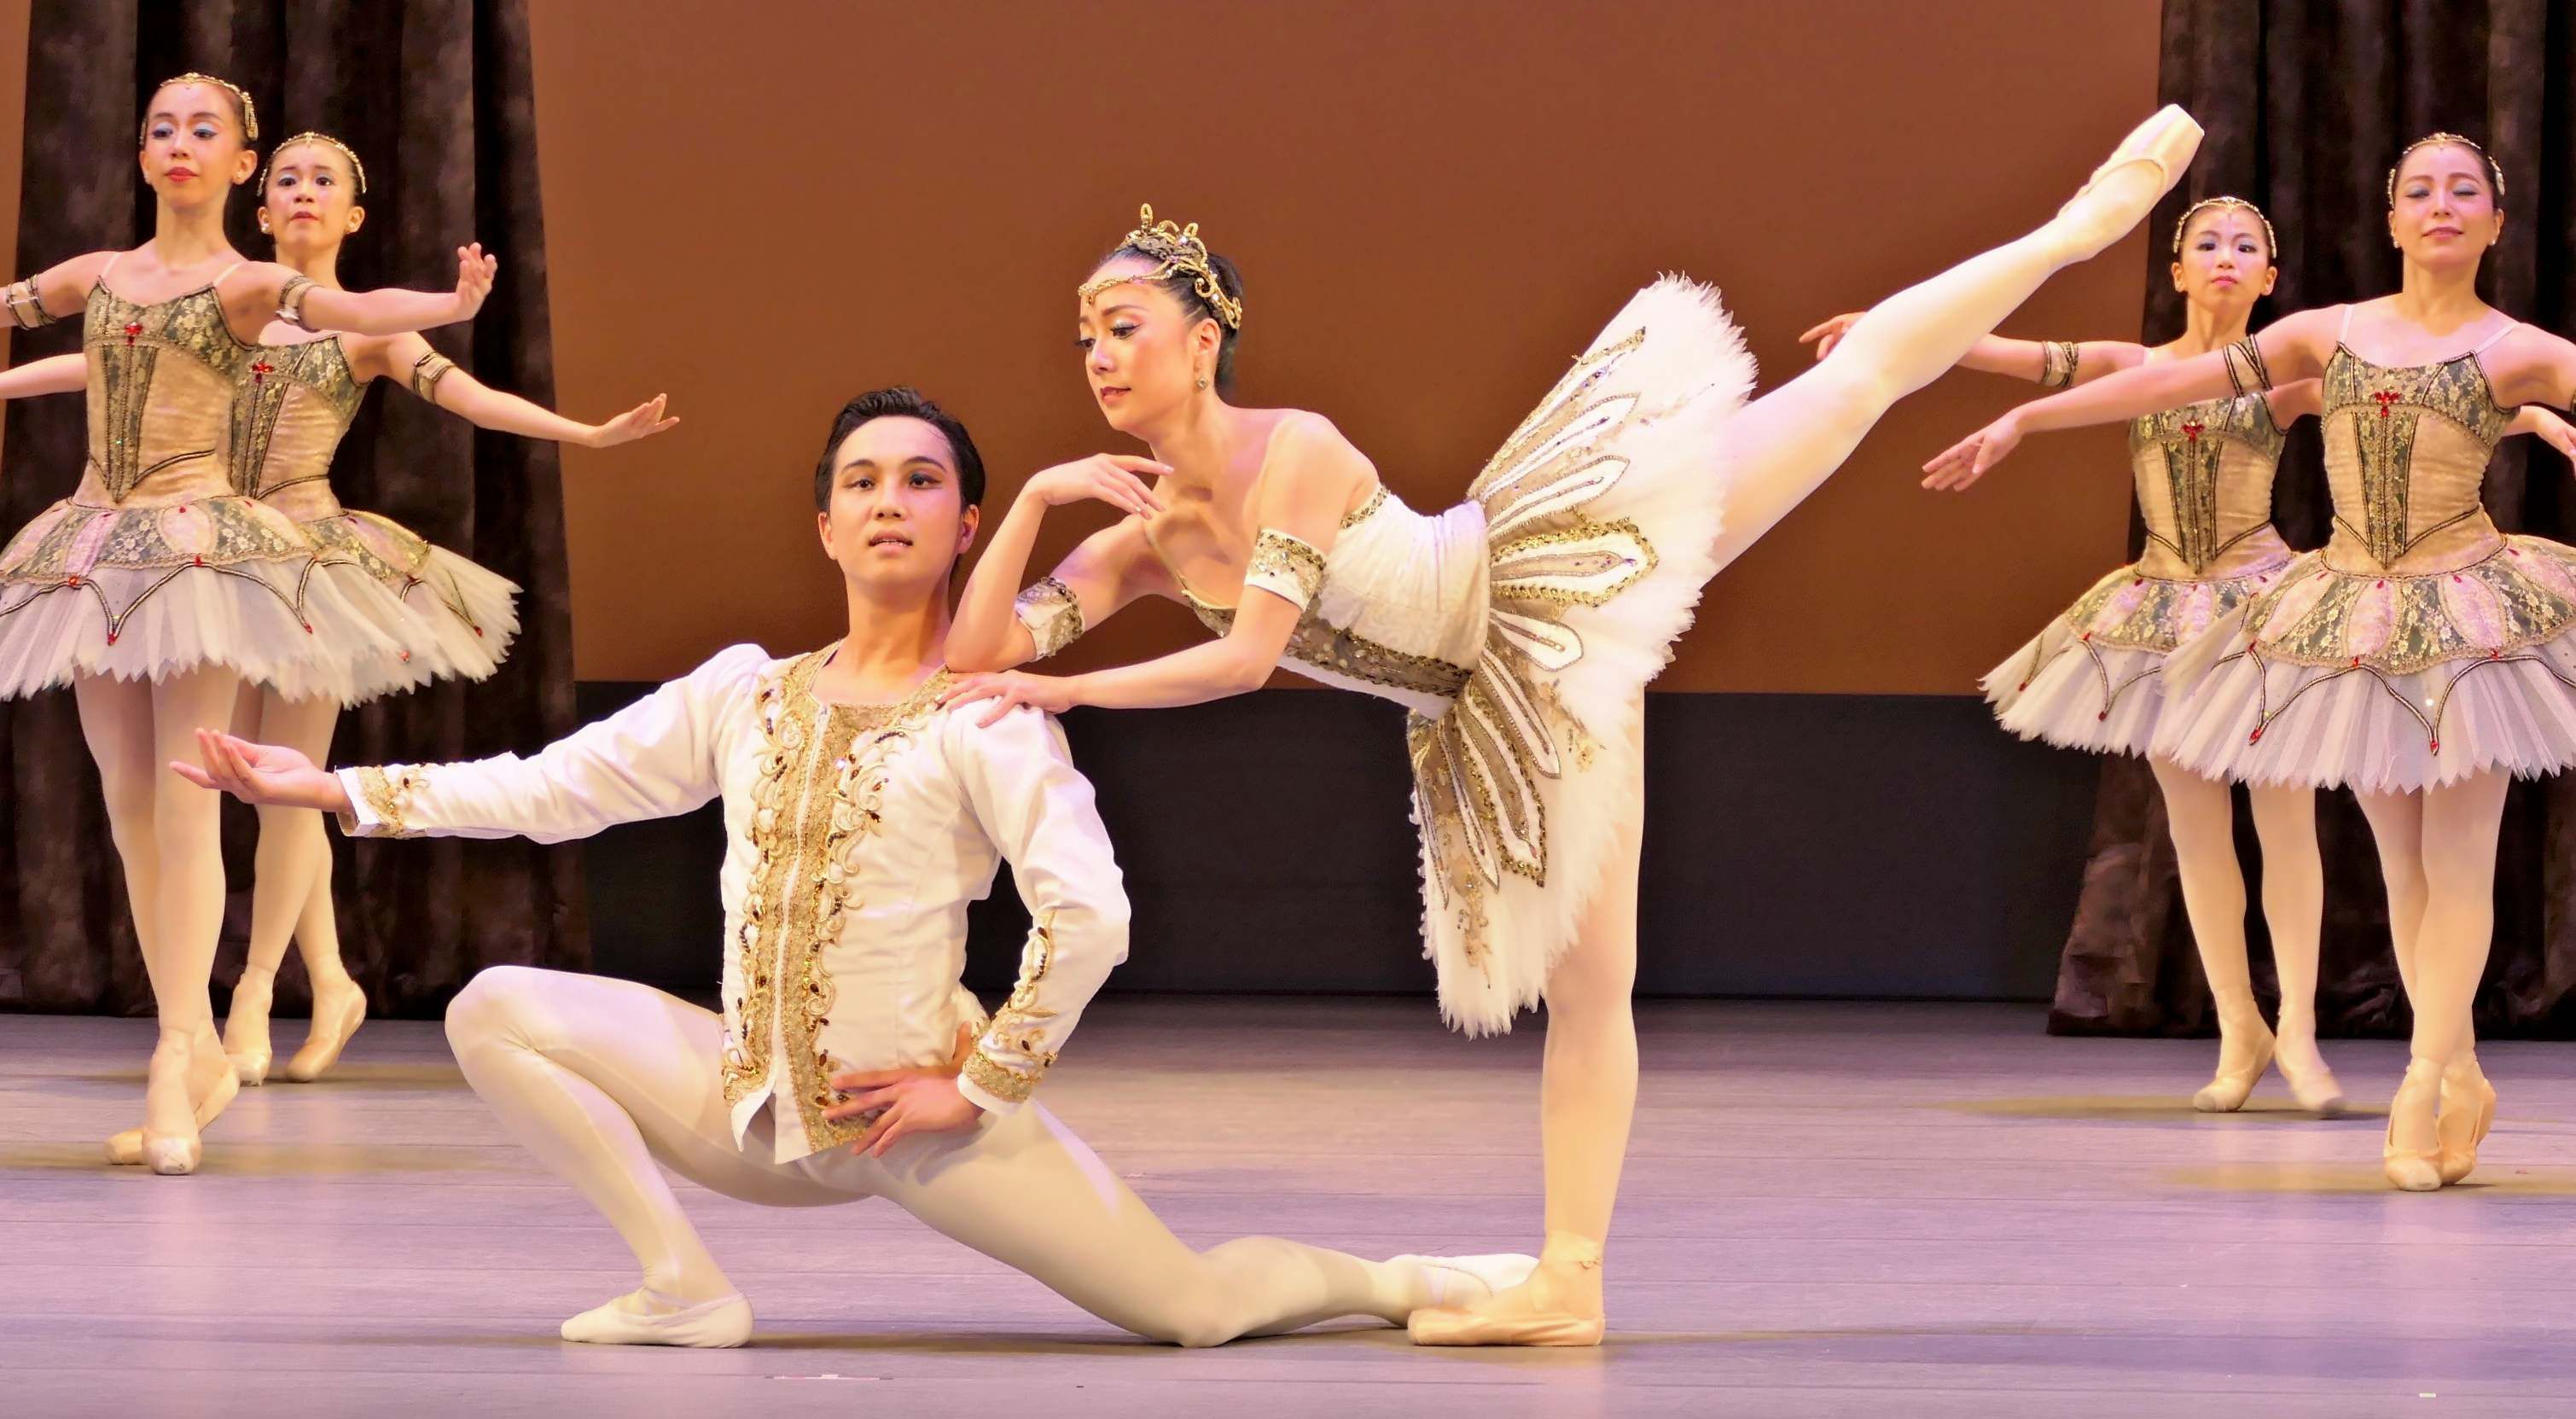 壮大な舞台で魅了 那覇シティバレエ２５周年 異国情緒あふれる舞 多彩